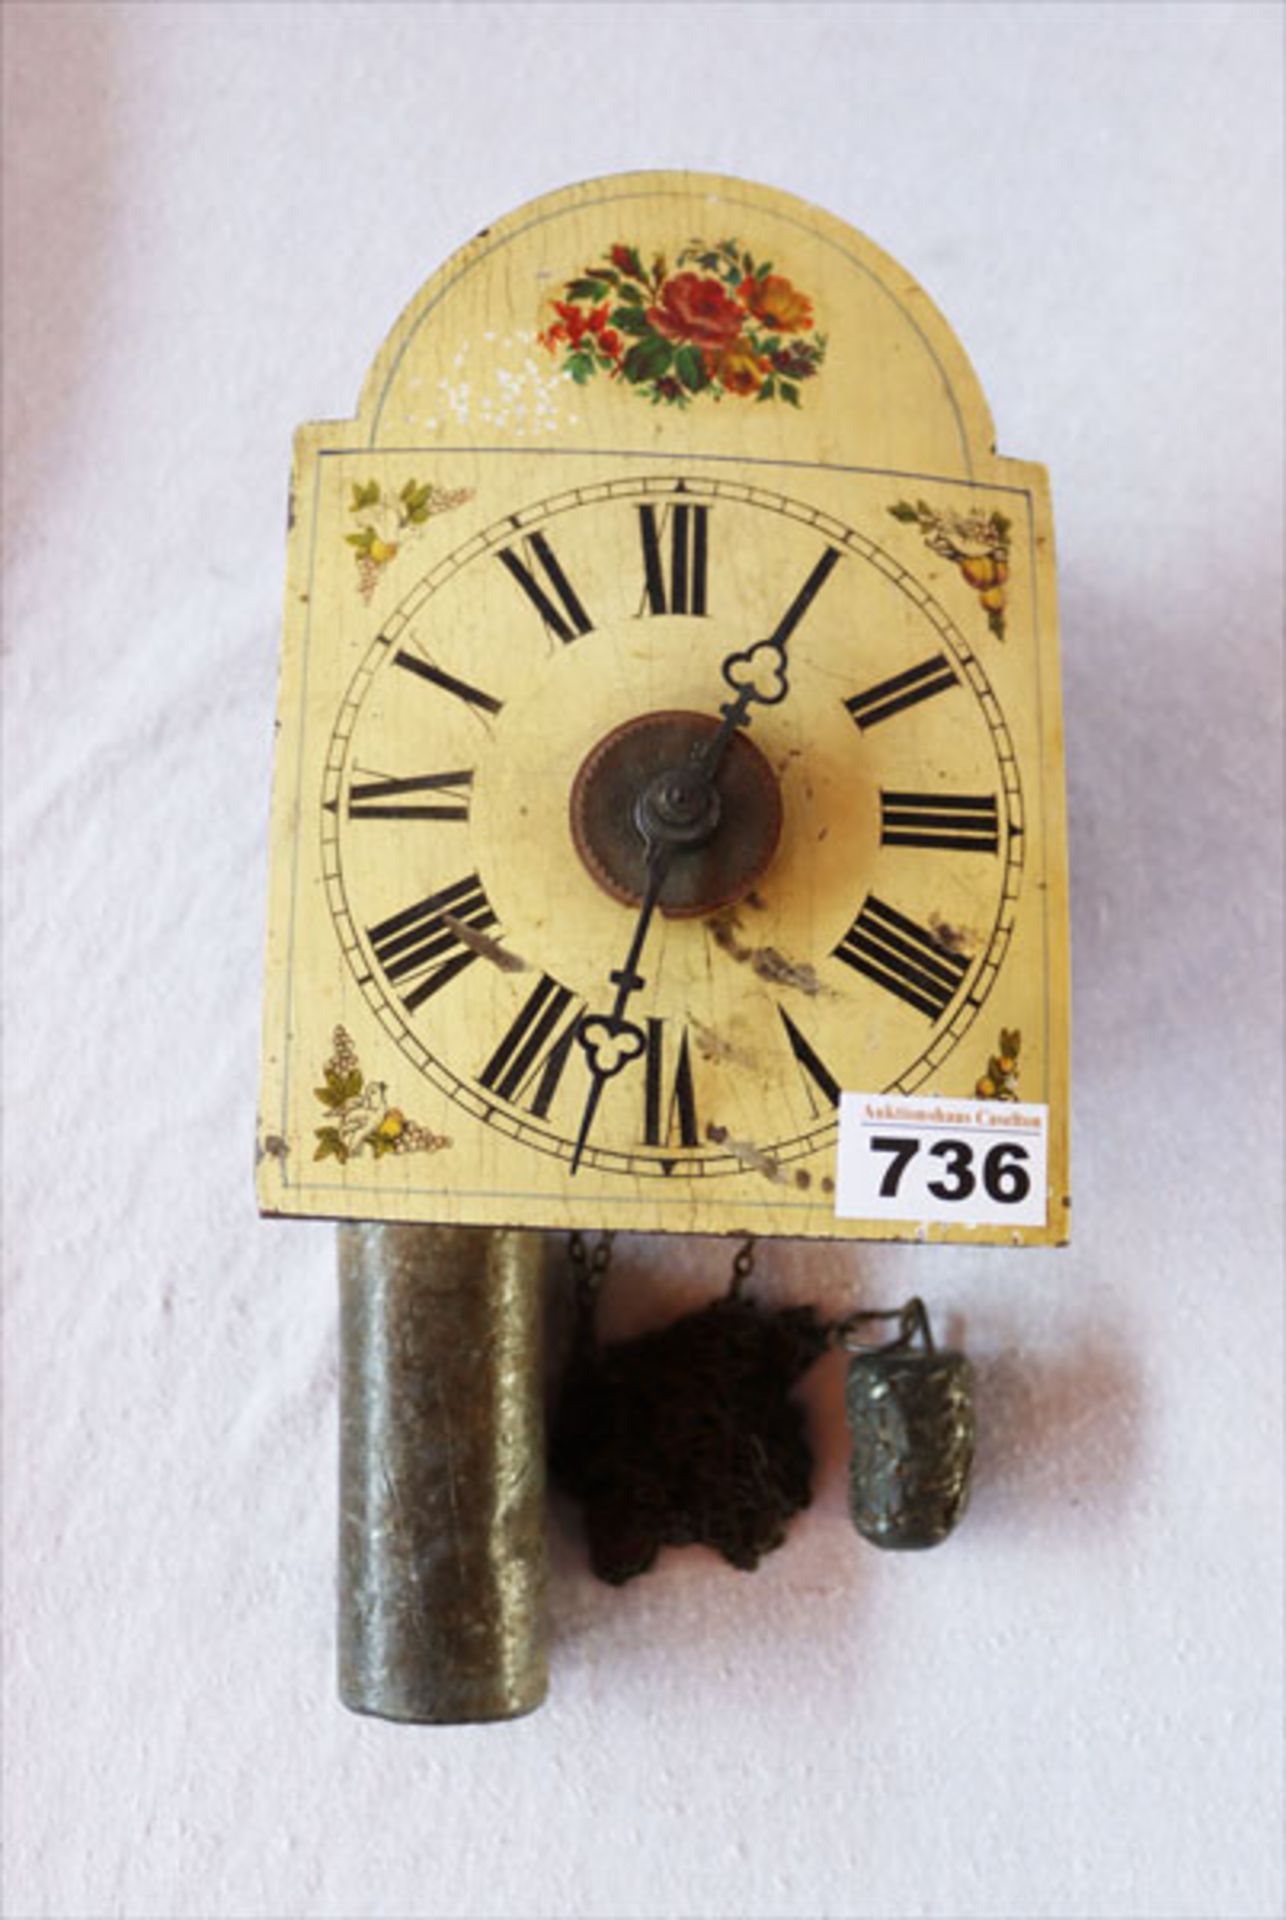 Wand Schildblattuhr mit Wecker, Blumendekor, 2 Gewichte, Funktion nicht geprüft, H 20 cm, B 14,5 cm,